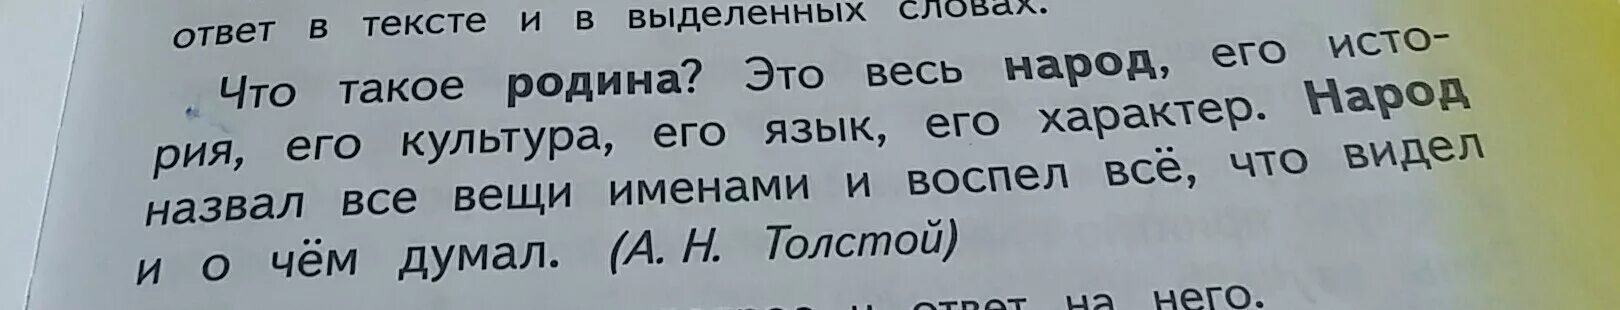 Почему русский язык называют родным. Почему мы называем язык русским. Текст с выделенными словами. Почему мы русский язык называем русским языком.